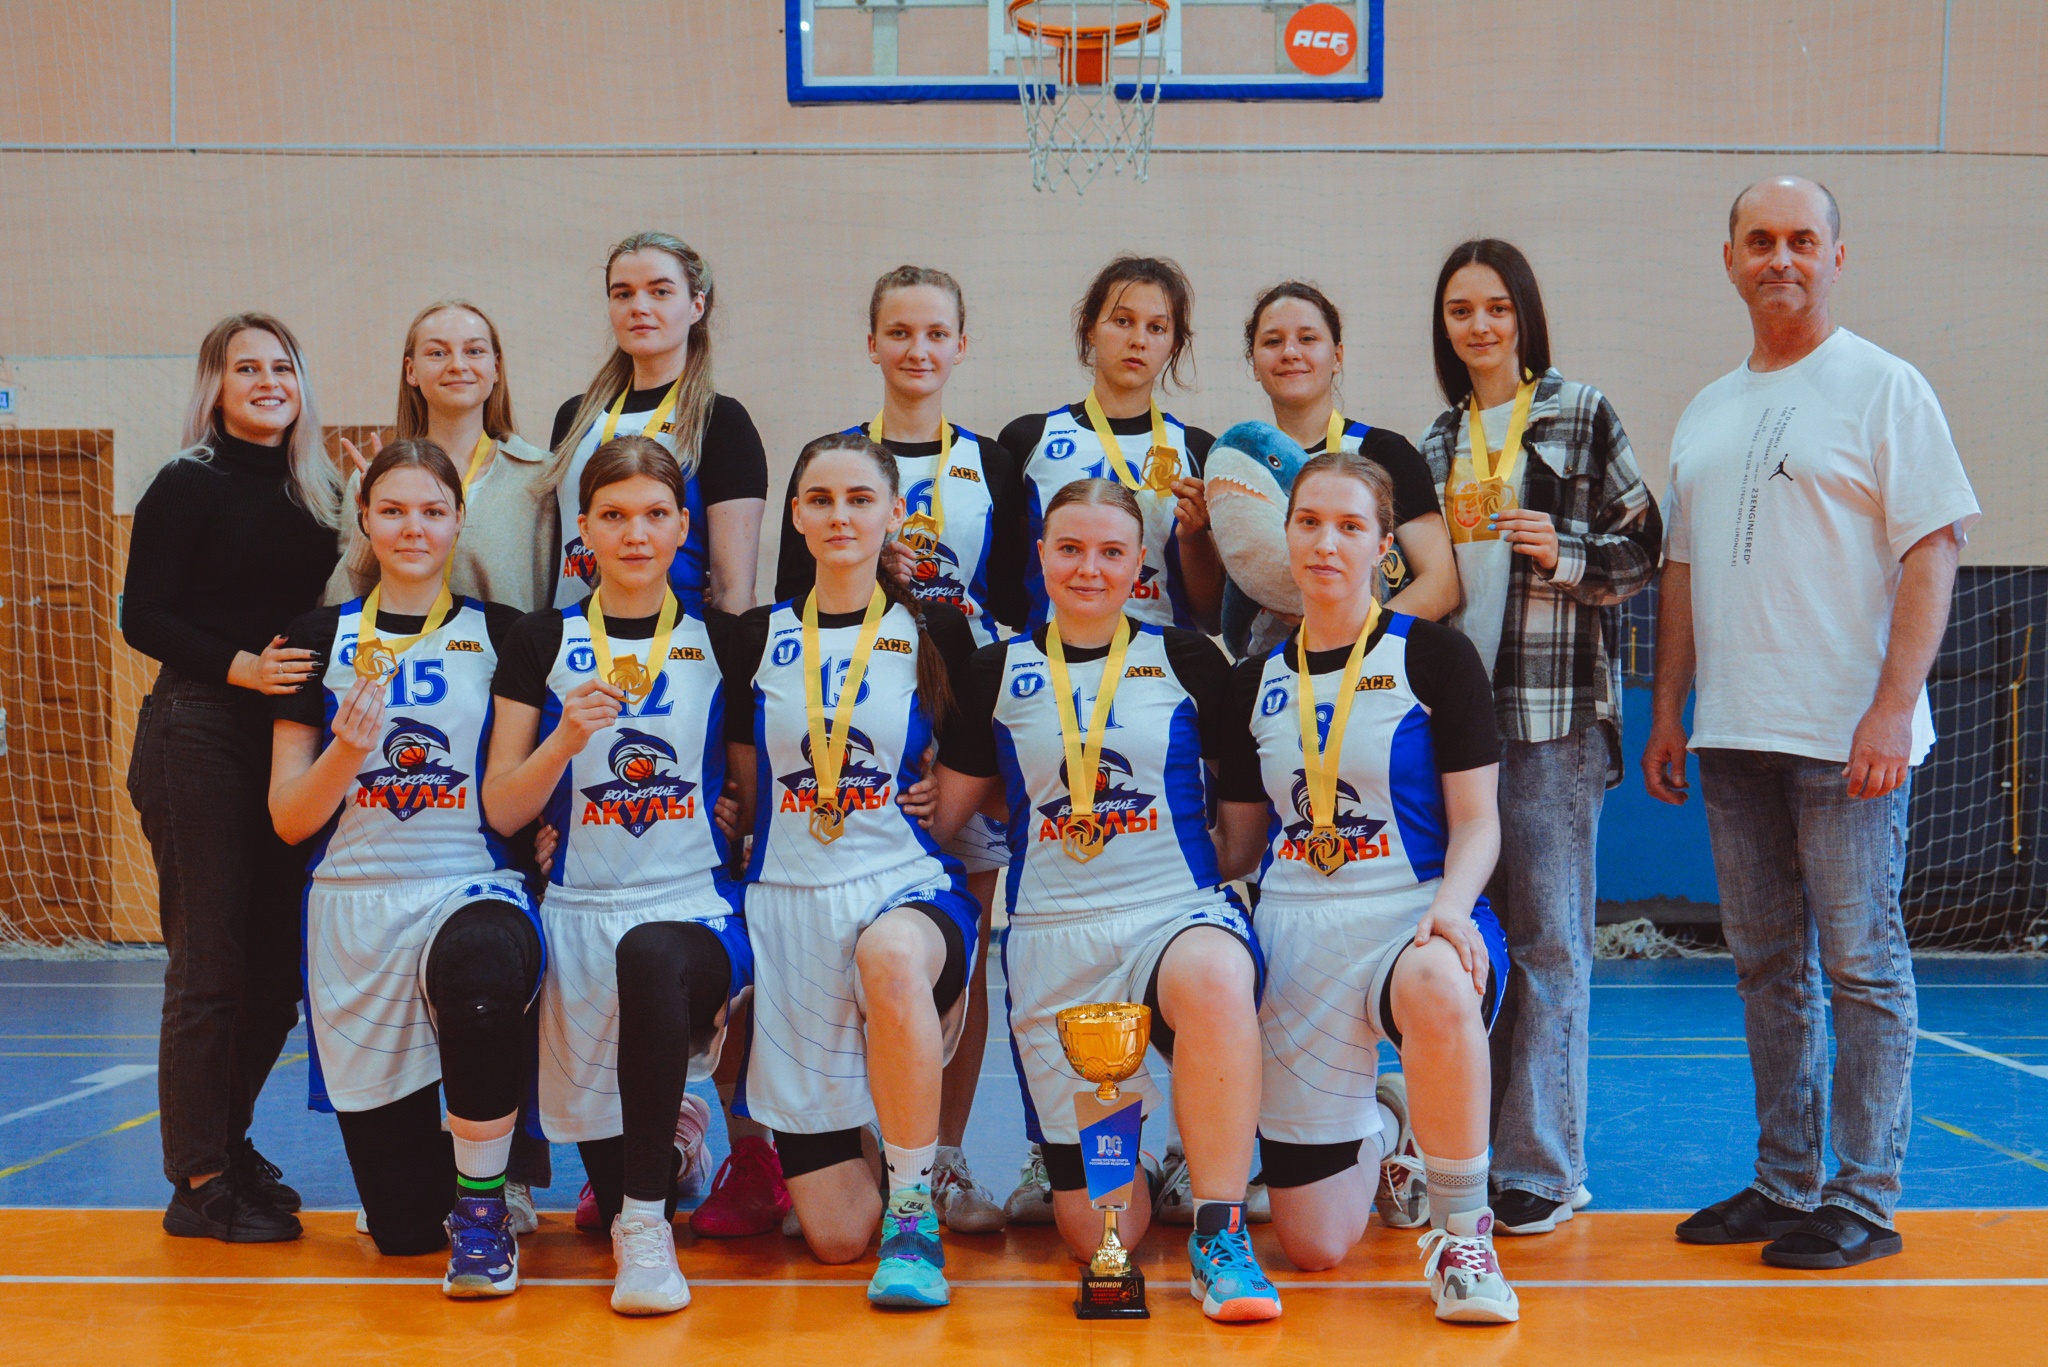  изображение для новости Баскетбол. Золото Чемпионата Ульяновской области среди женских команд!